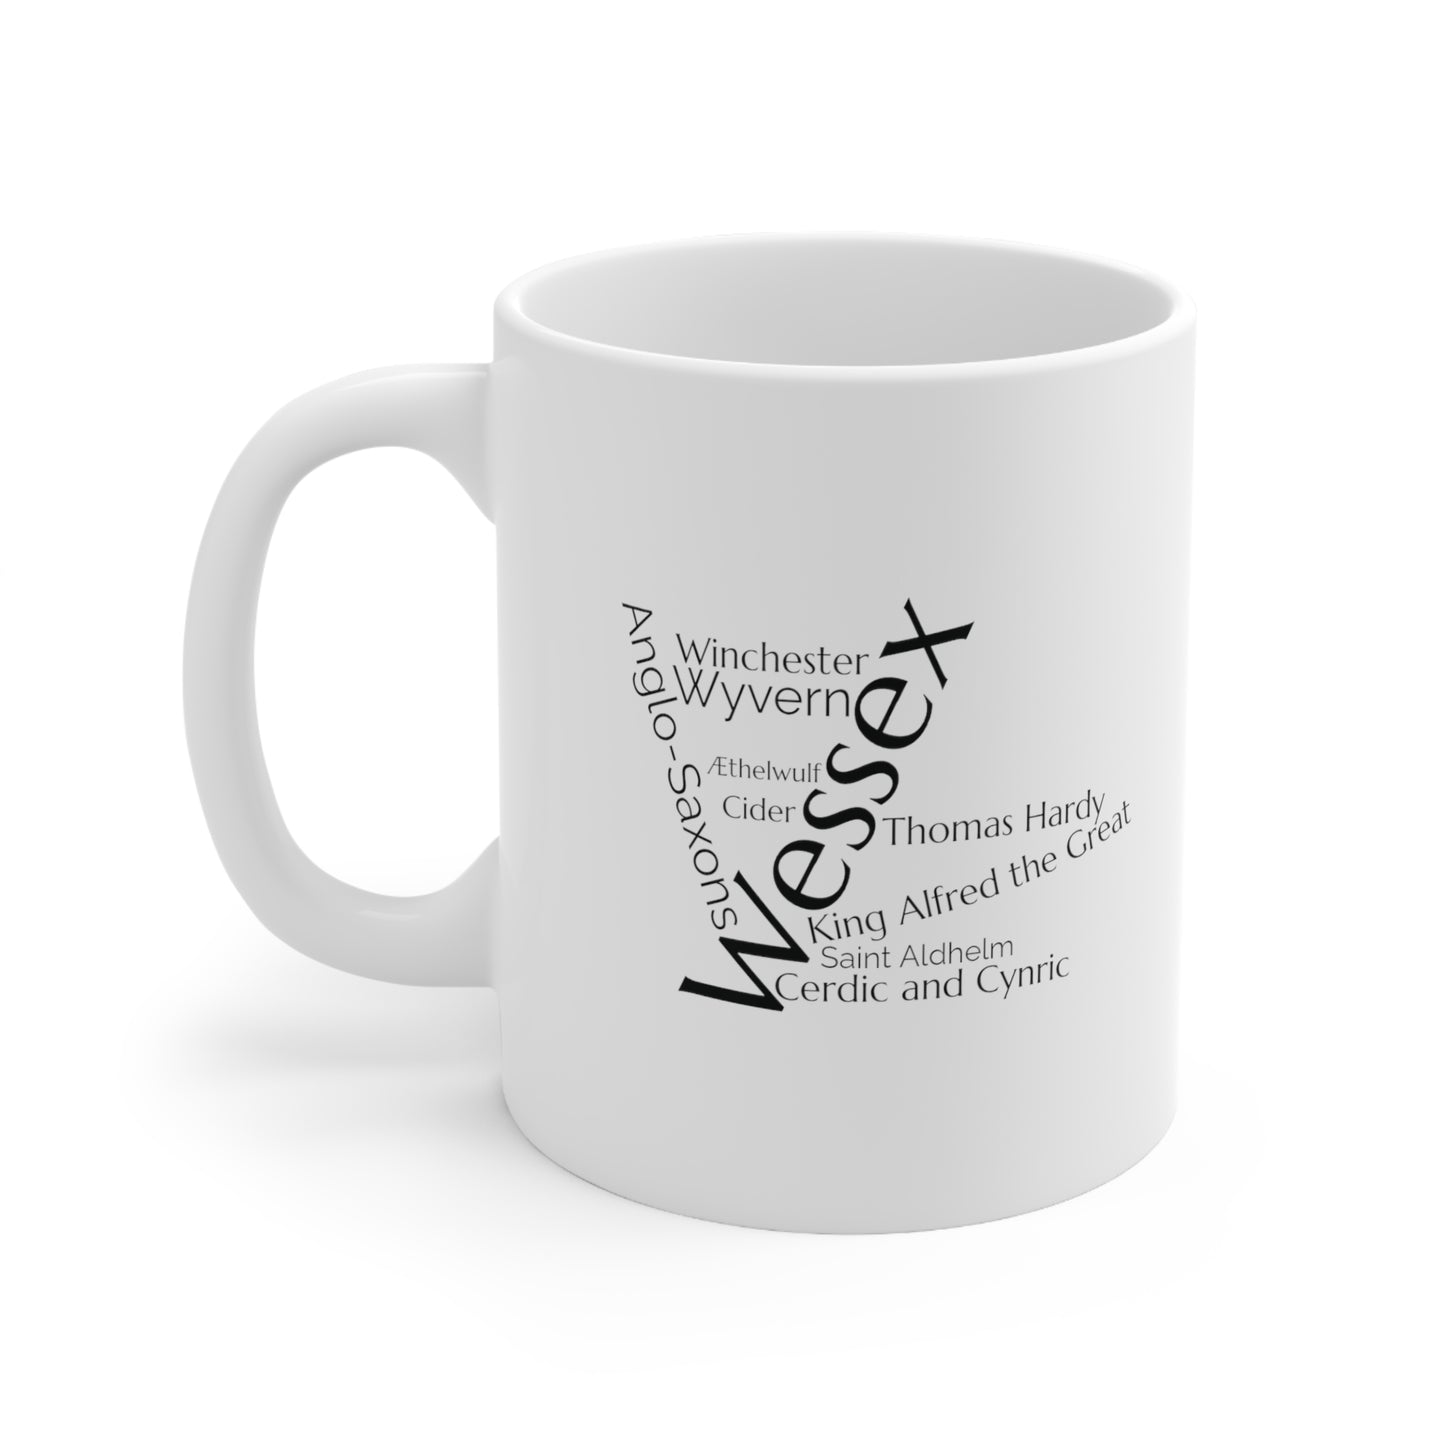 Wessex word mug, local mug, geography mug, gift, mug, coffee cup, word mug, wordcloud mug, christmas gift, birthday gift